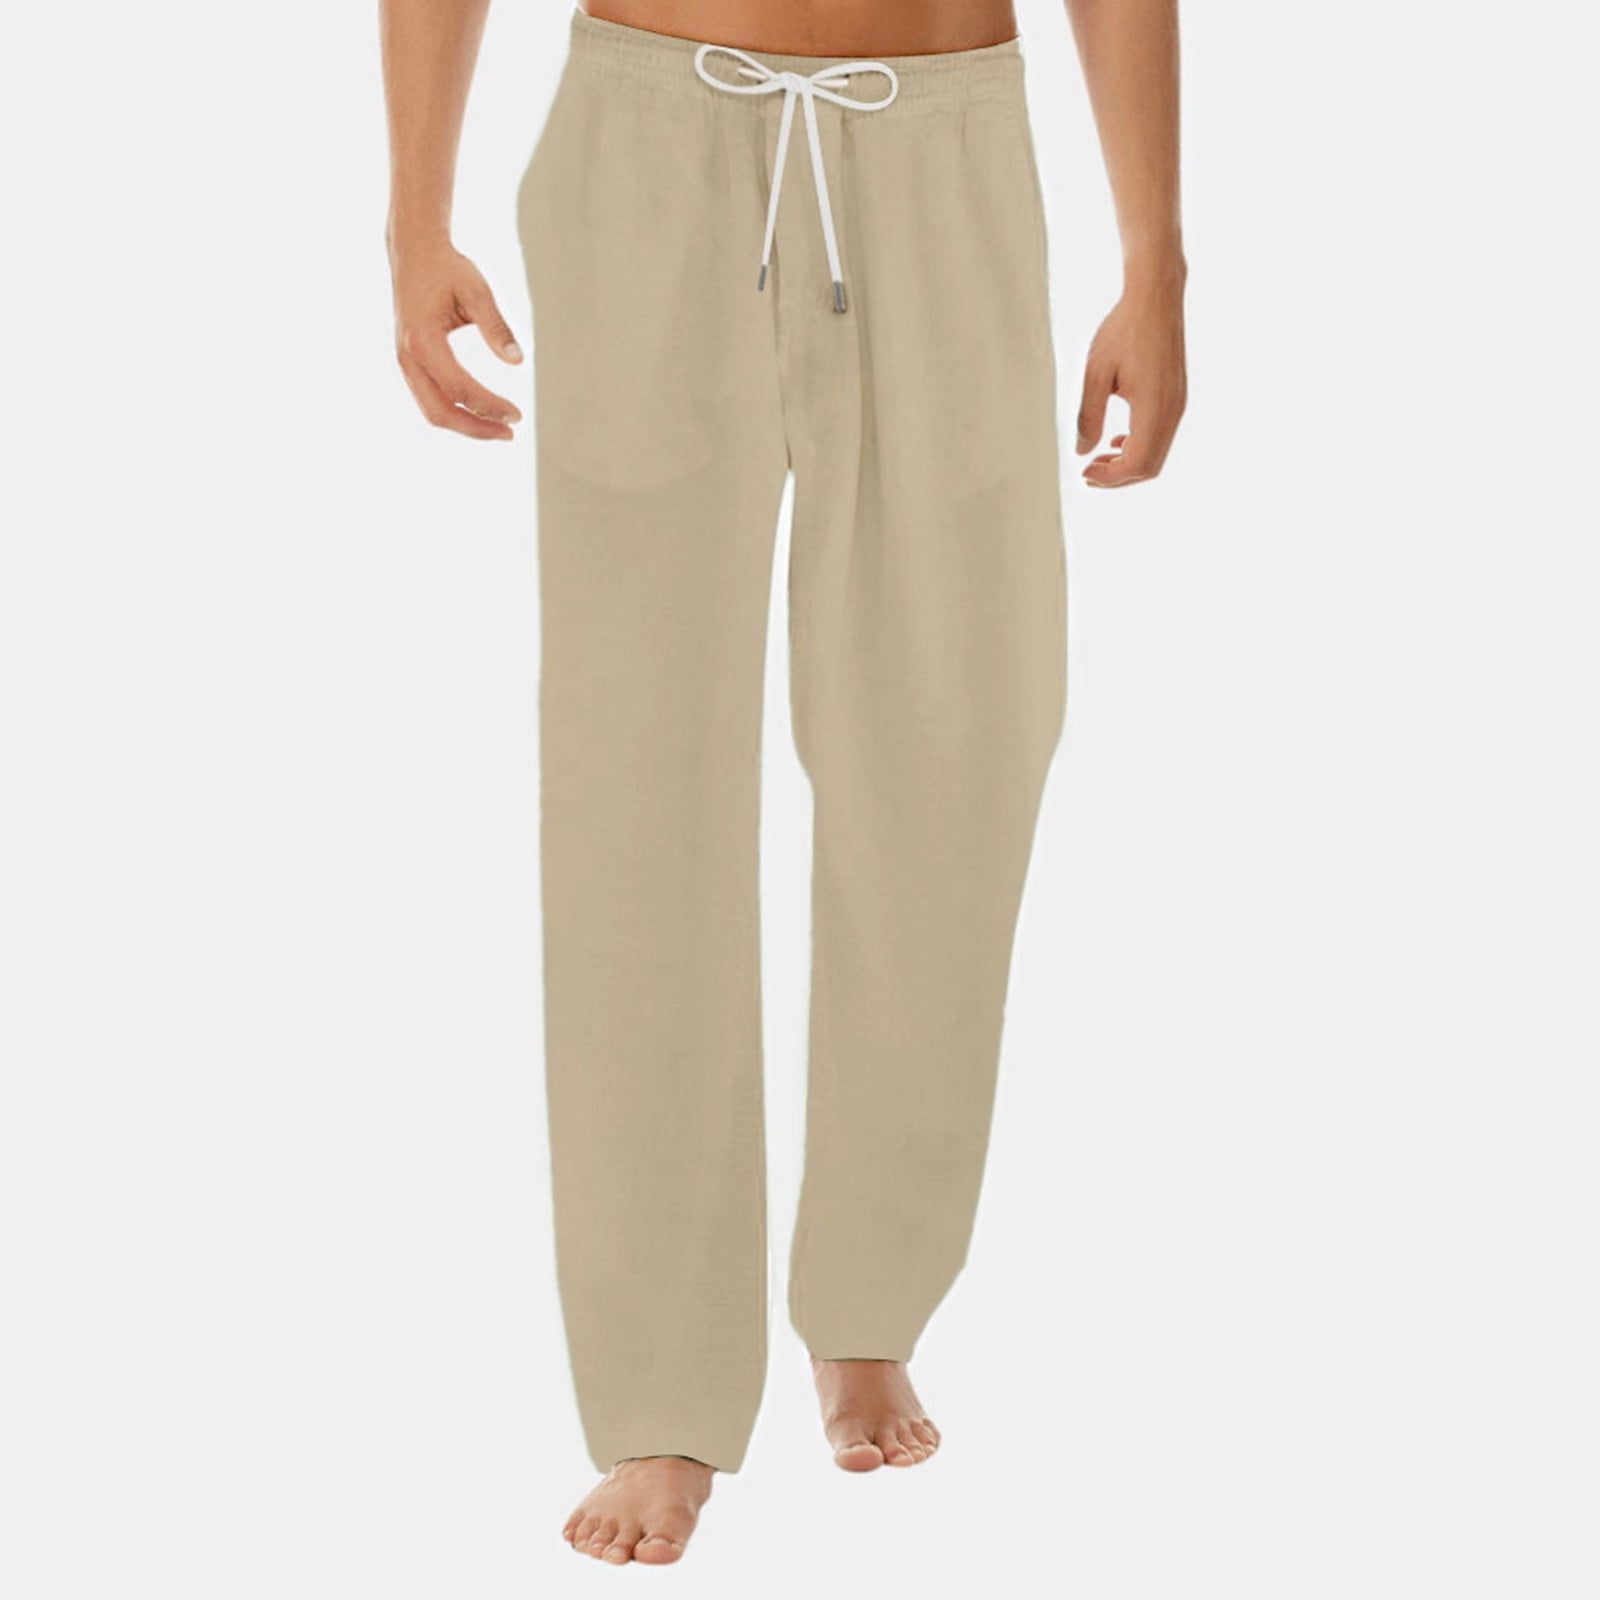 AdBFJAF Mens Casual Pants Slim Fit Men's Summer New Styles Simple and ...